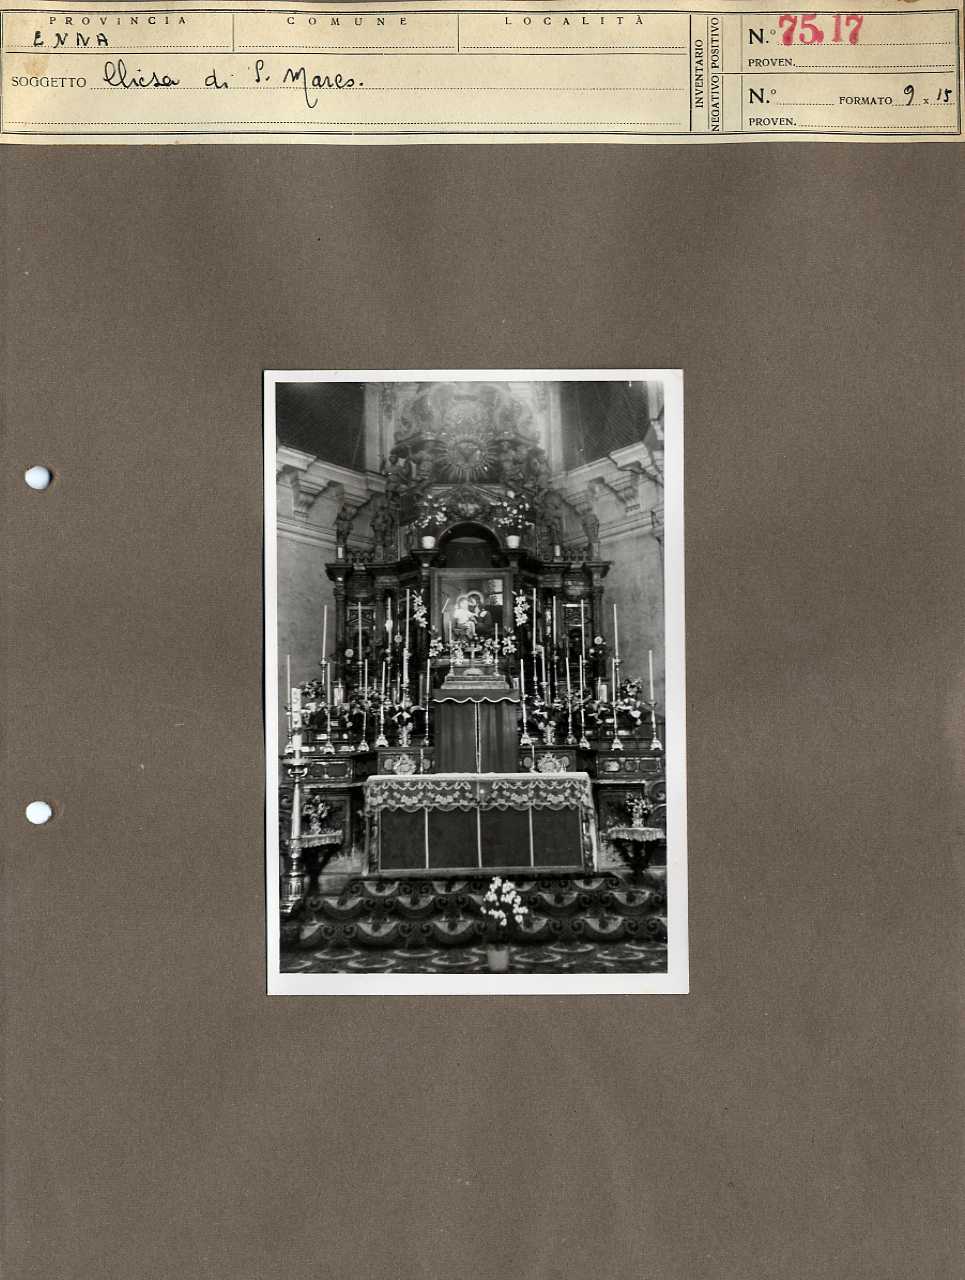 Sicilia - Enna - Architettura religiosa - Chiesa di San Marco - altare (positivo, elemento-parte componente, scheda di supporto) di Anonimo <1945 - 1955> (metà XX)